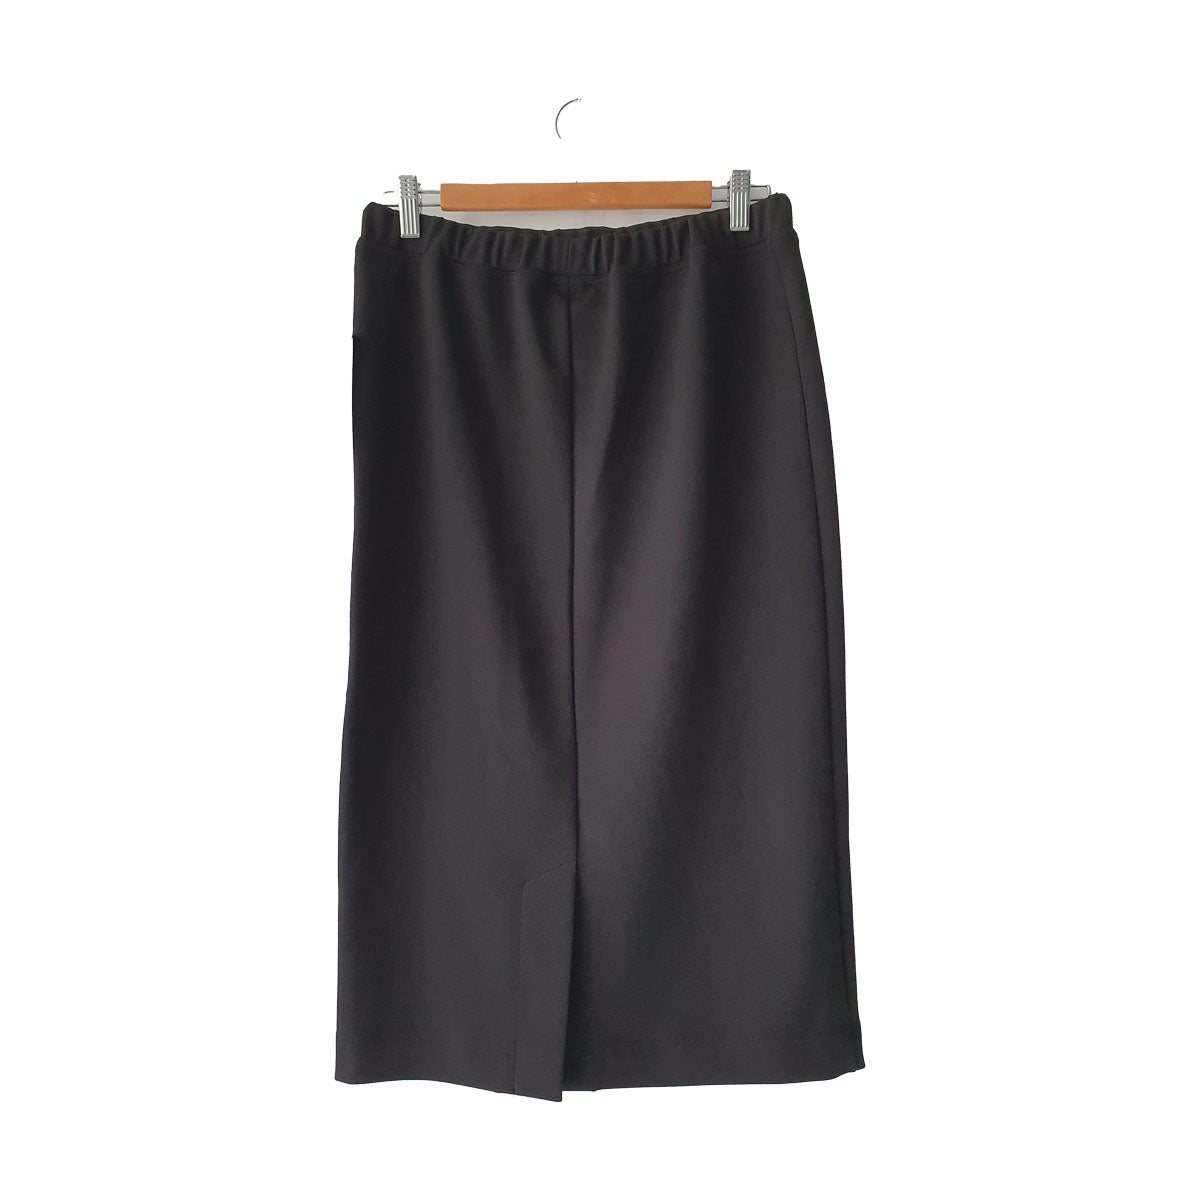 TW23315 - Pull on skirt in BLACK